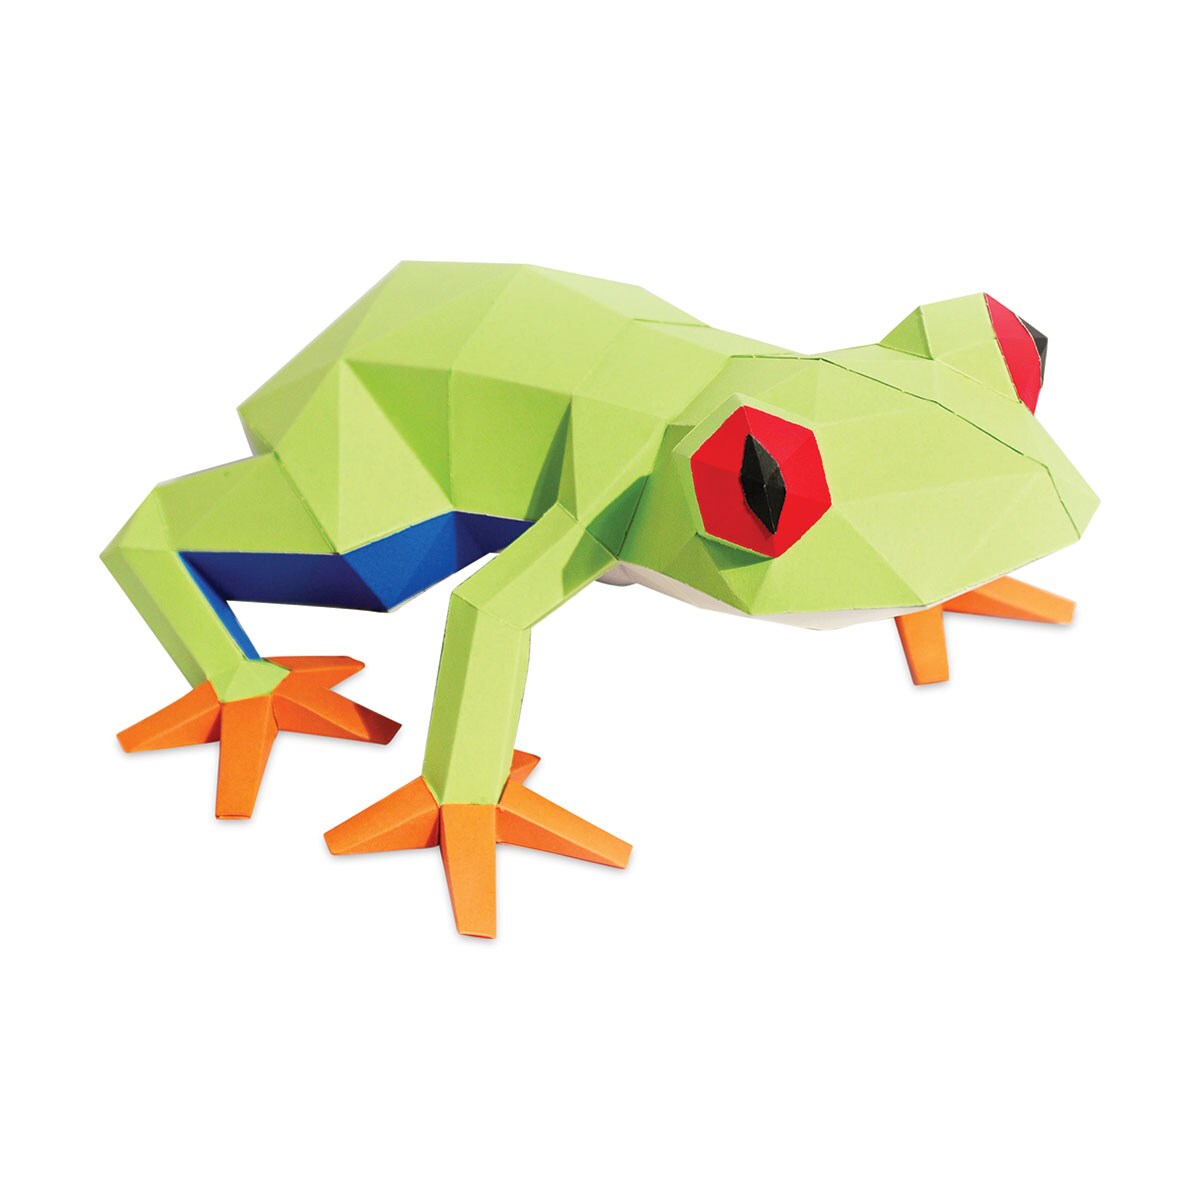 Papercraft World 3D Papercraft DIY Lamp Shade - Frog